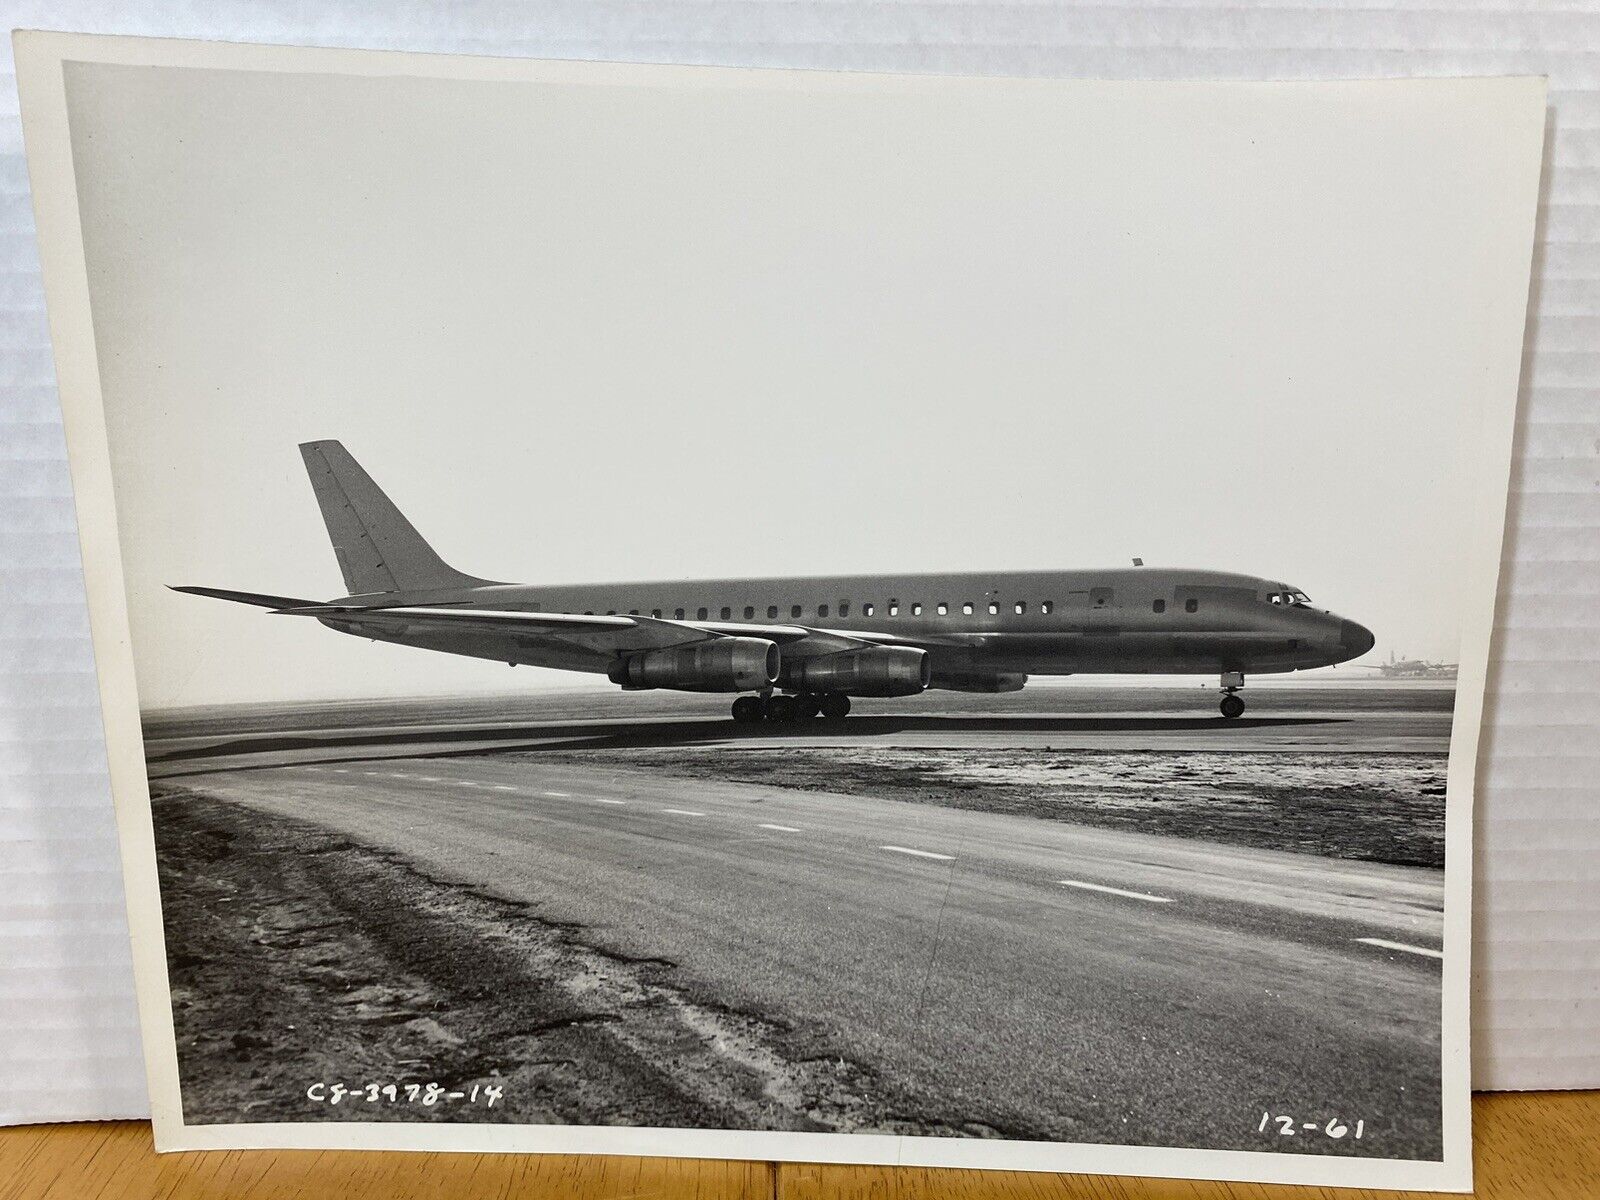 Douglas DC-8-McDonnell Douglas DC-8 Vintage C8-3978-14 / 12-61